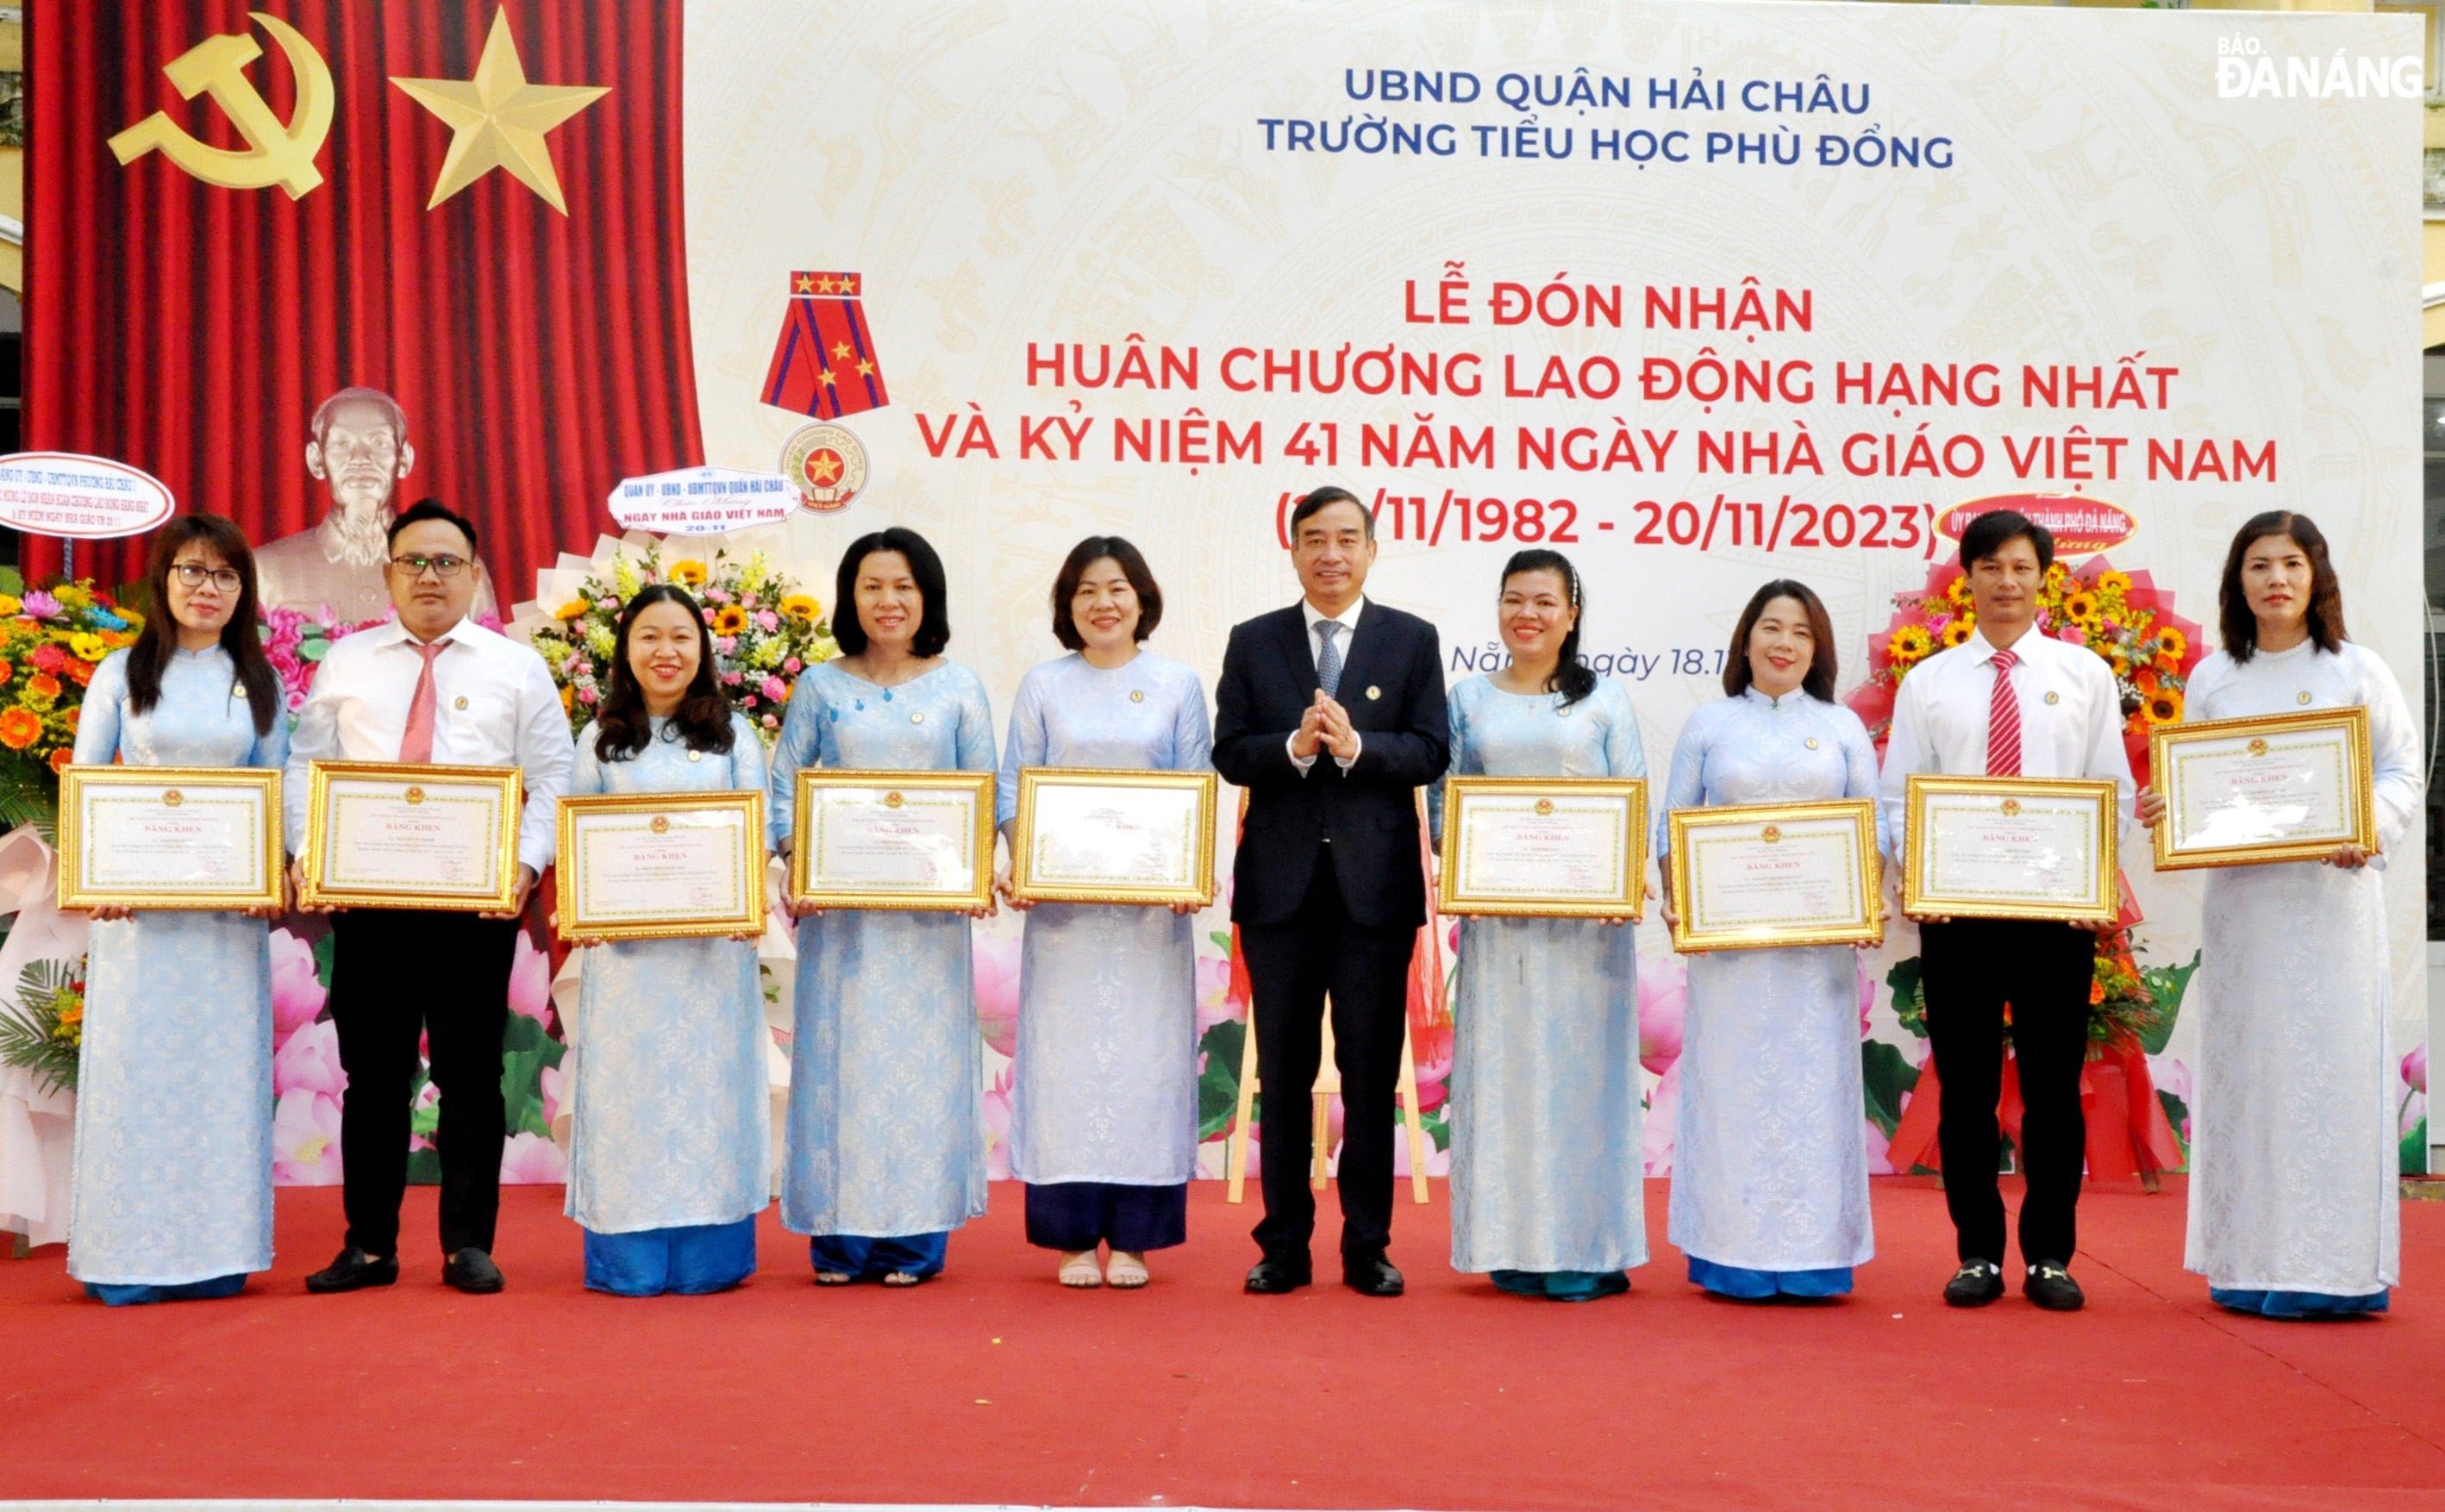 Chủ tịch UBND thành phố Lê Trung Chinh (thứ 5, bên phải sang) trao tặng bằng khen cho các cá nhân thuộc Trường TH Phù Đổng. Ảnh: LÊ HÙNG